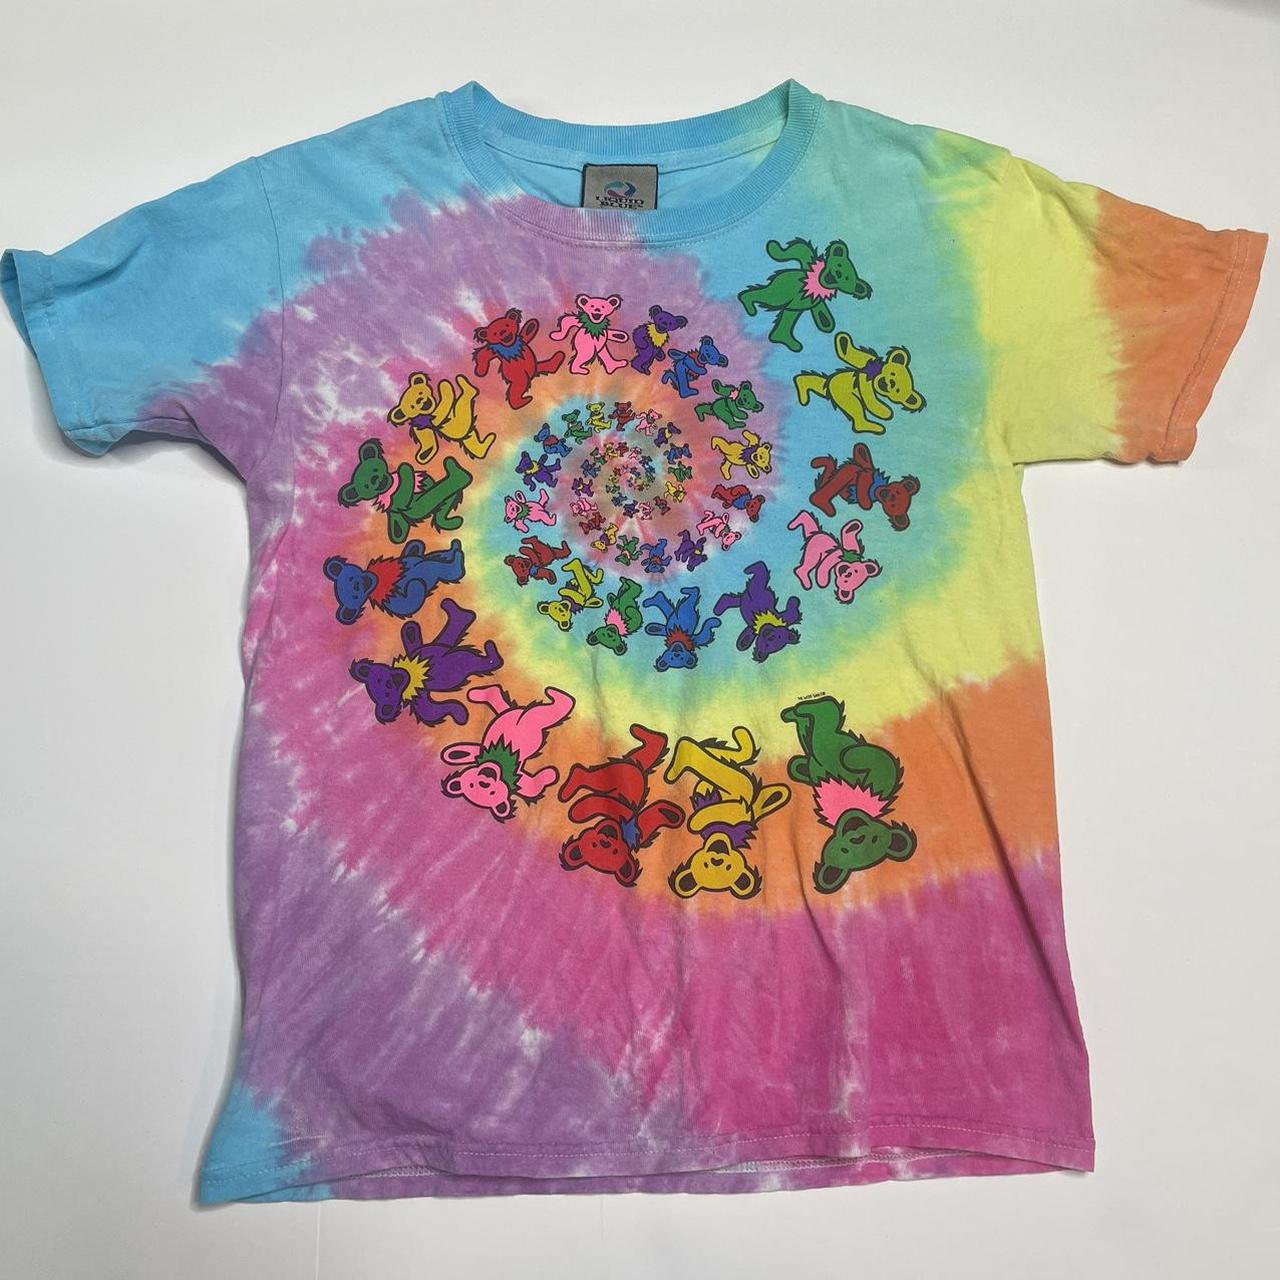 Grateful Dead Spiral Trippy Bears Tie Dye T-shirt - Old School Tees